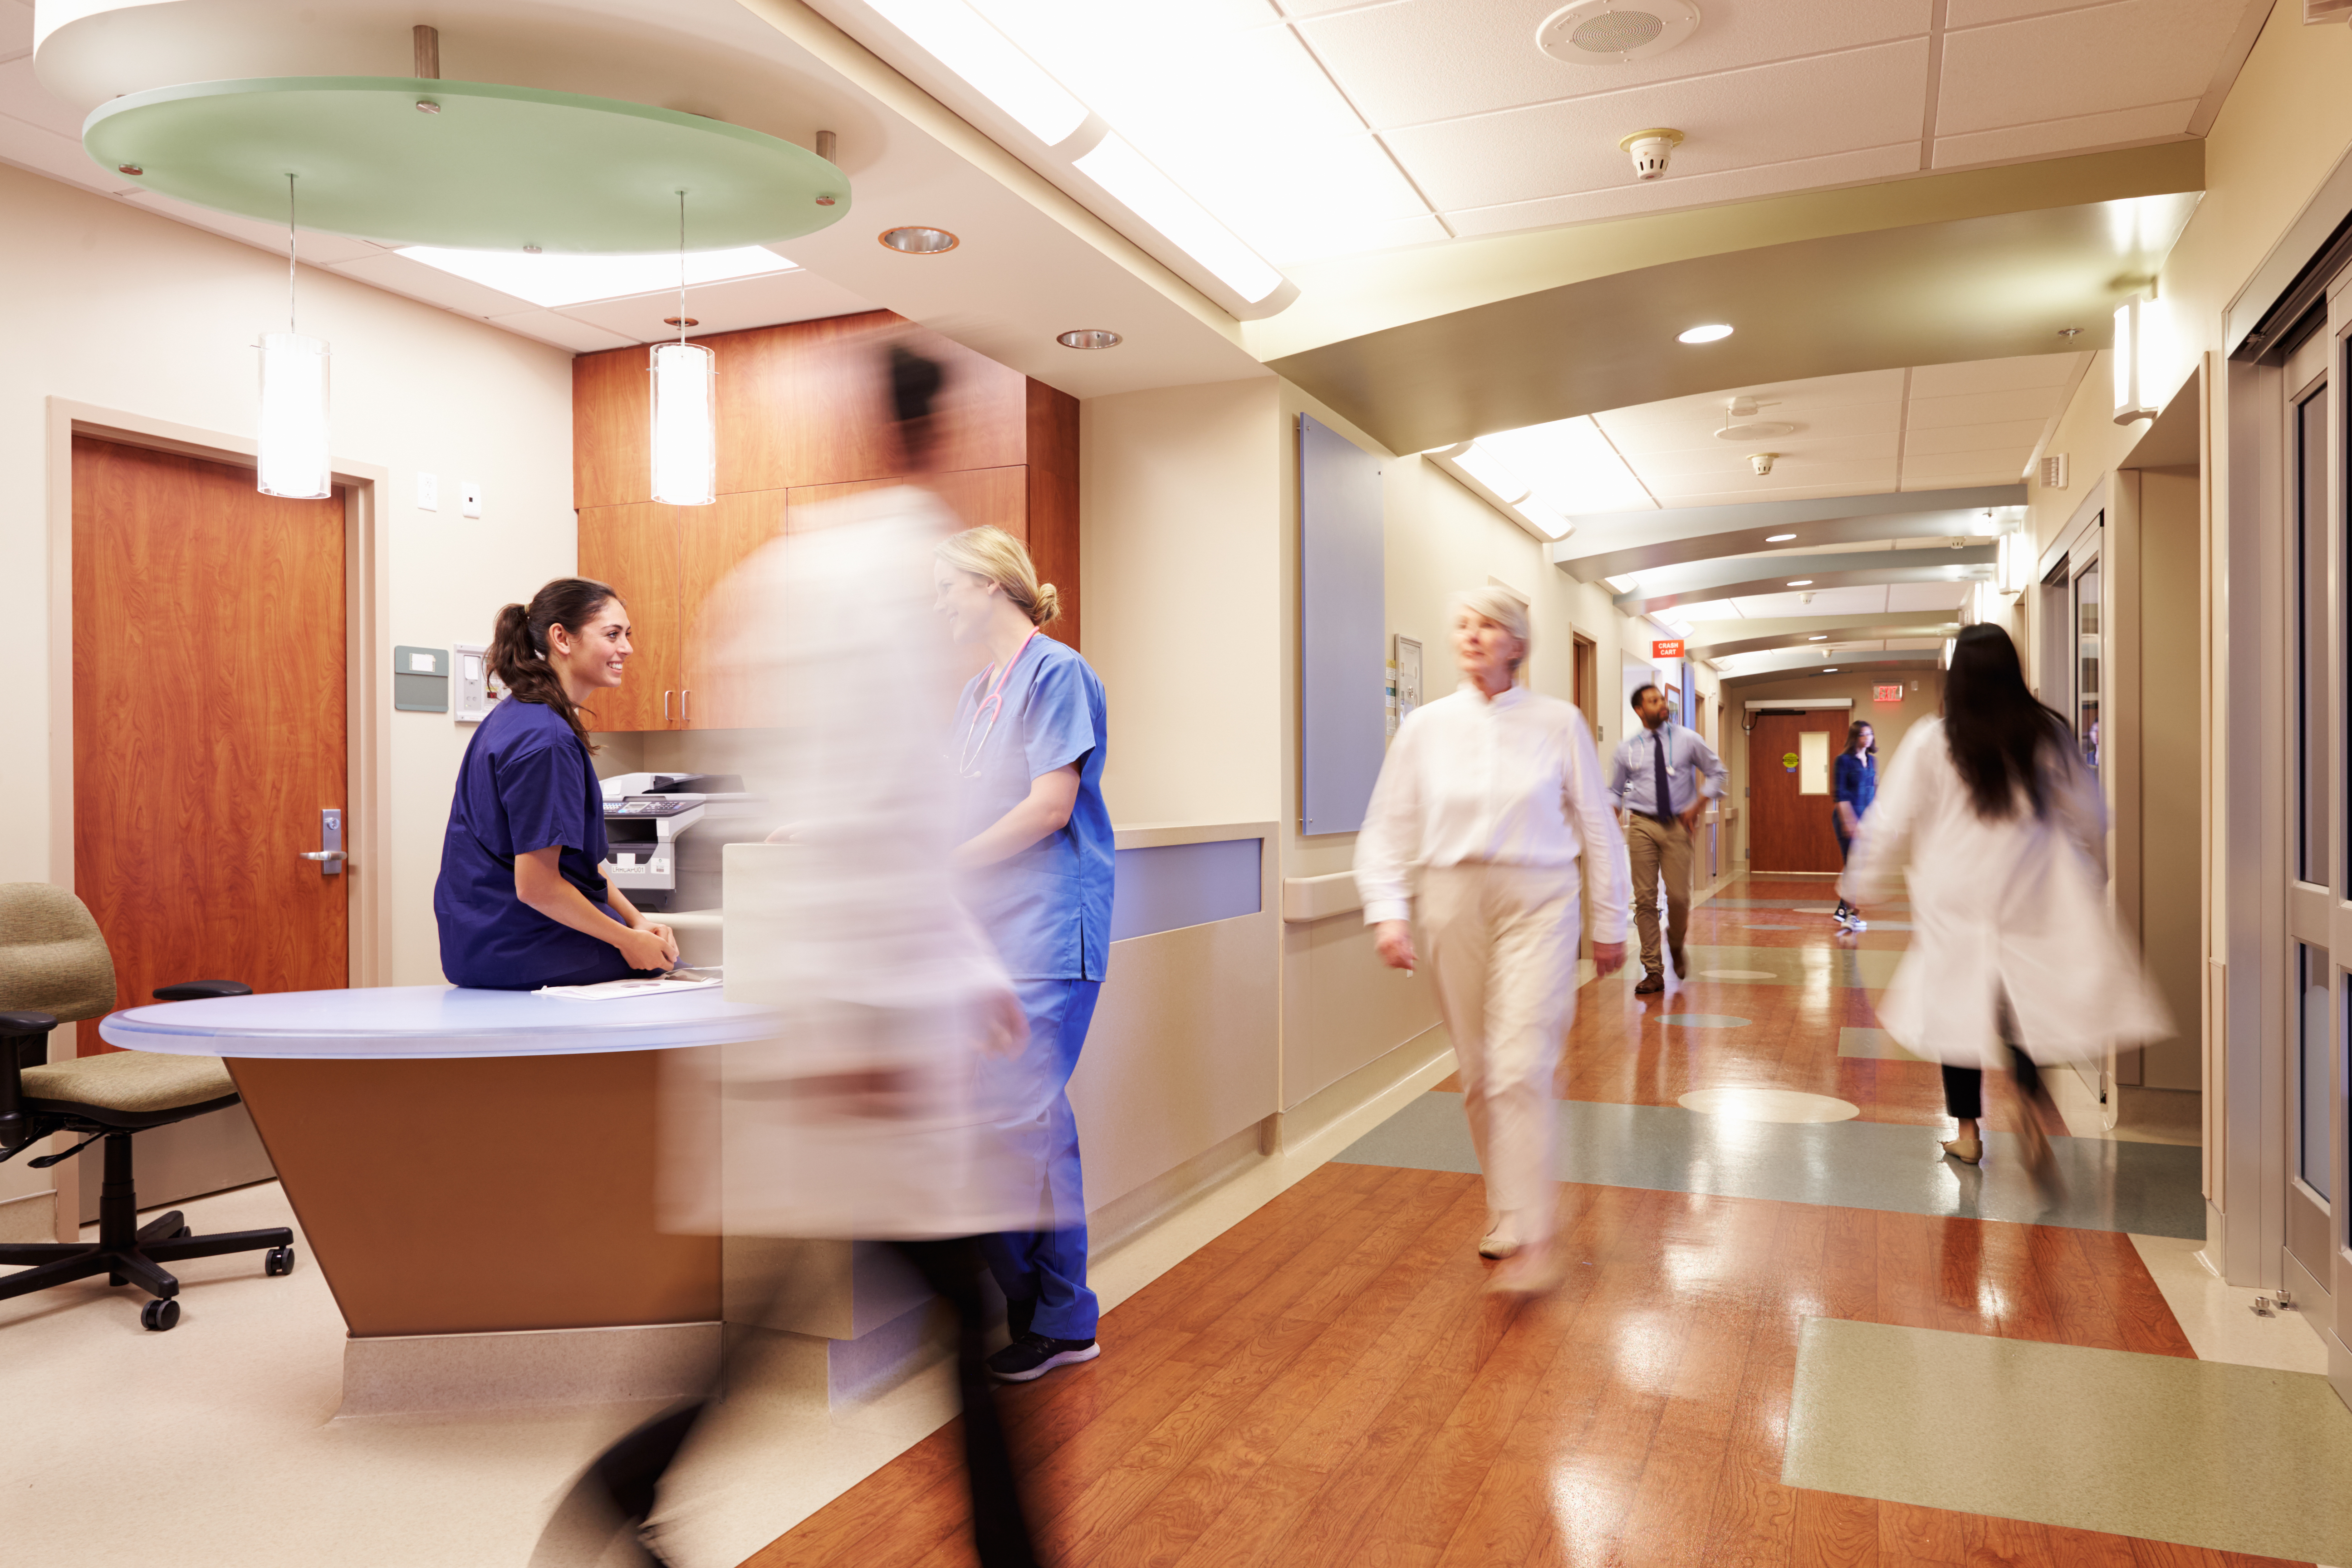 Gente caminando en un hospital | Fuente: Shutterstock